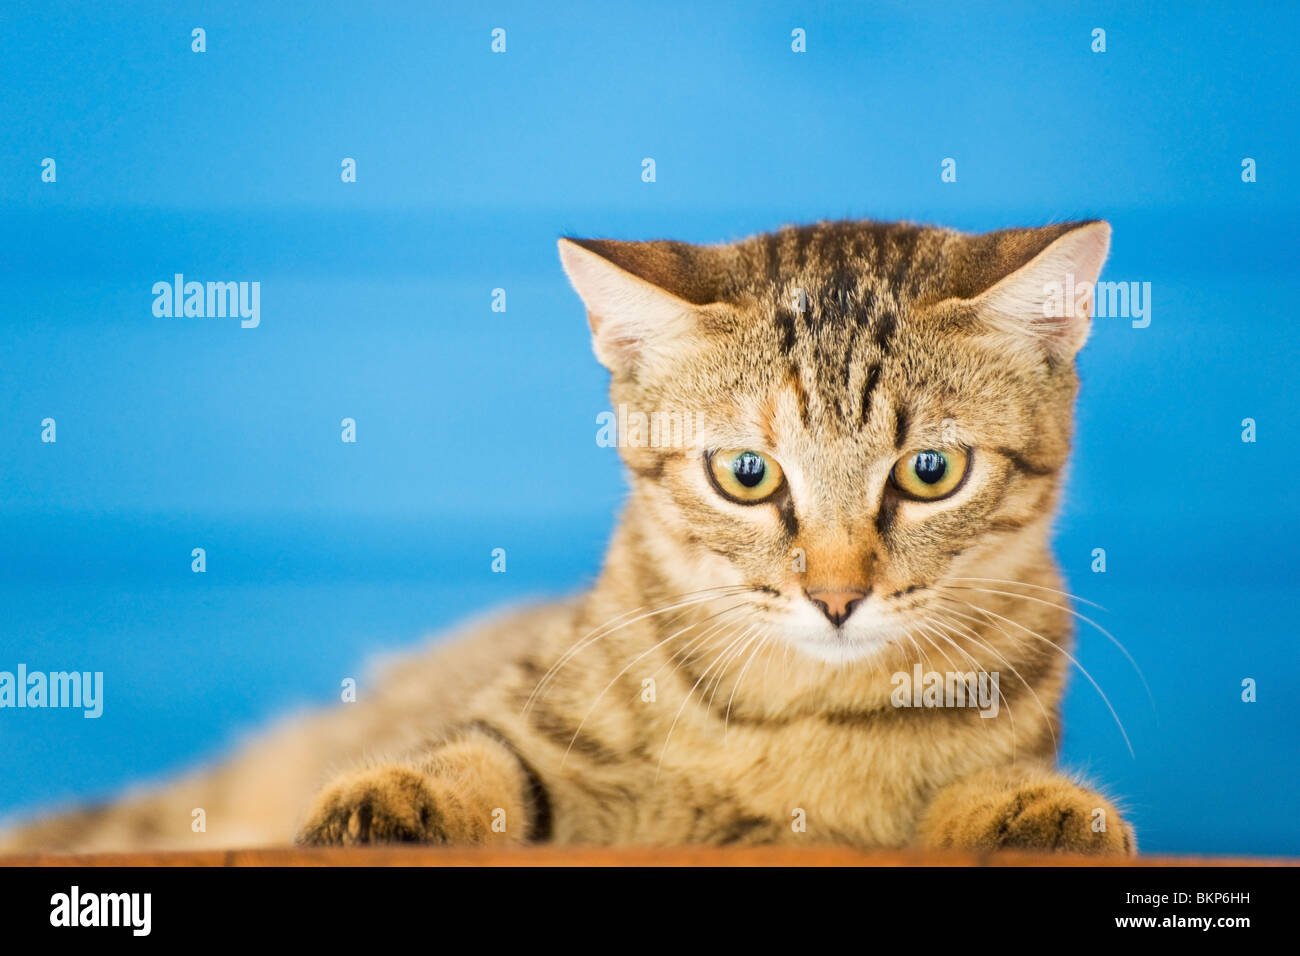 Cute cat grec avec bandes de fond bleu Banque D'Images